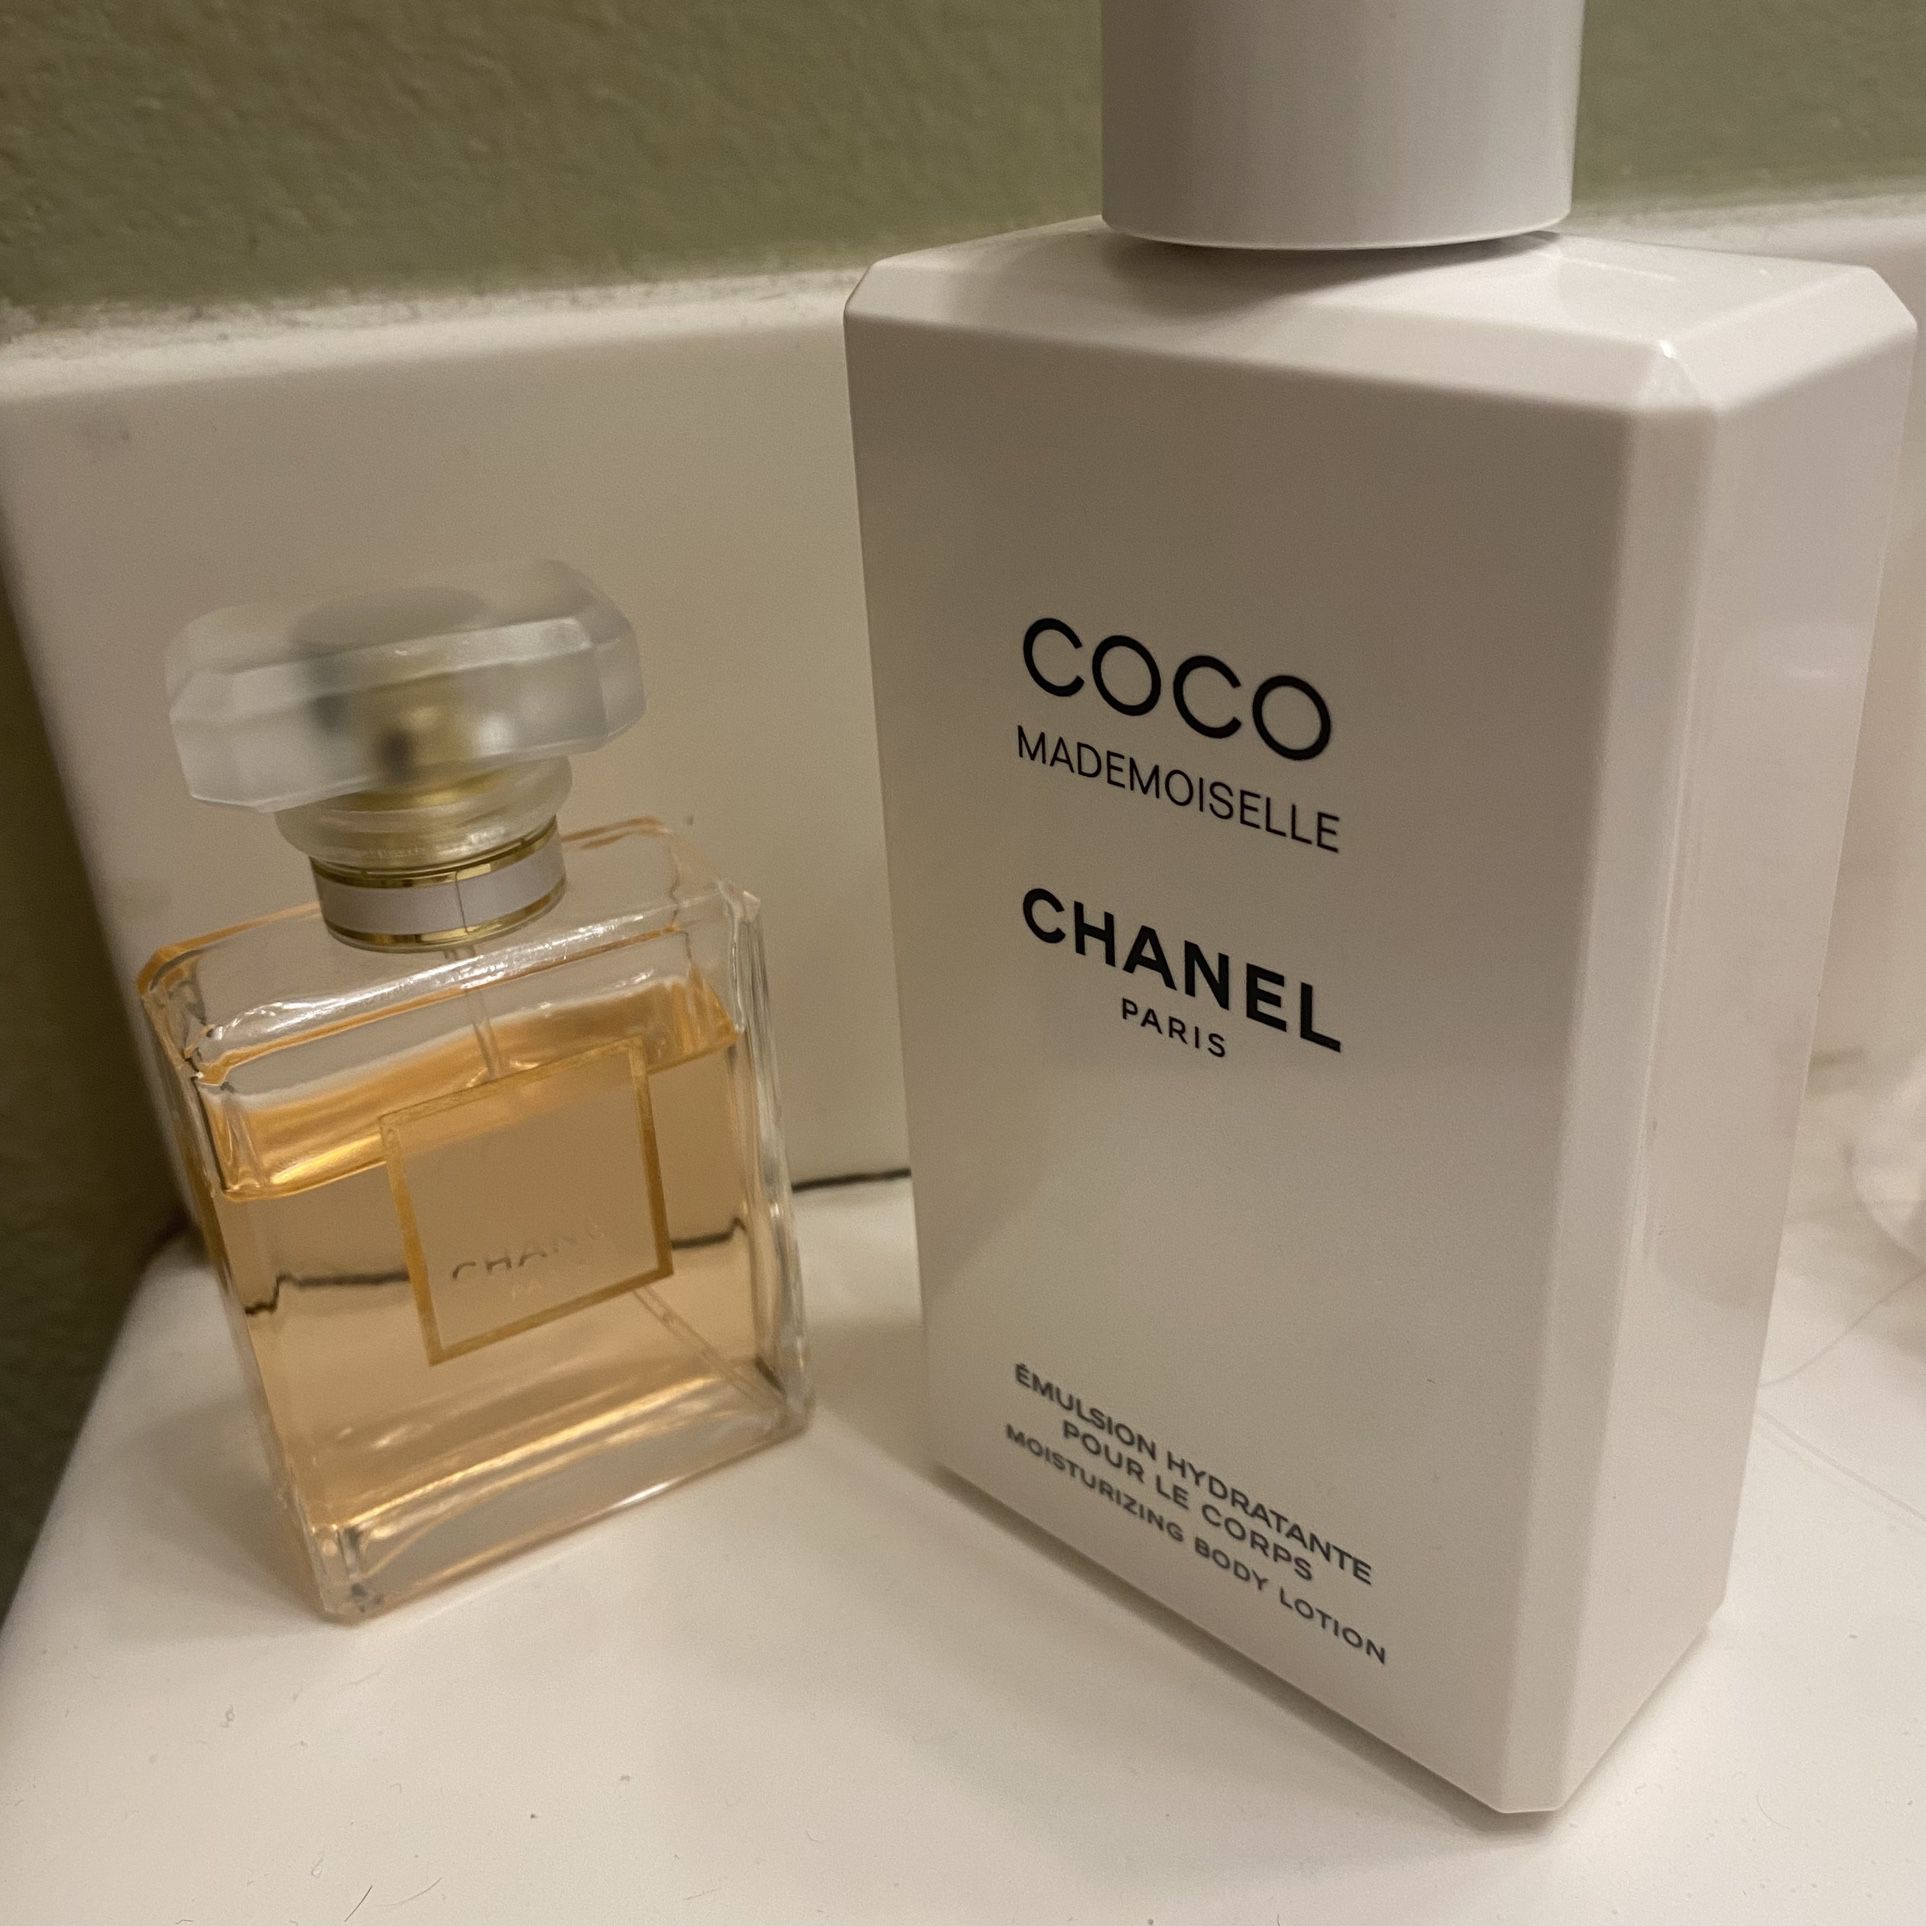 Coco Chanel Madamoiselle Eau De Parfum for Sale in Bellflower